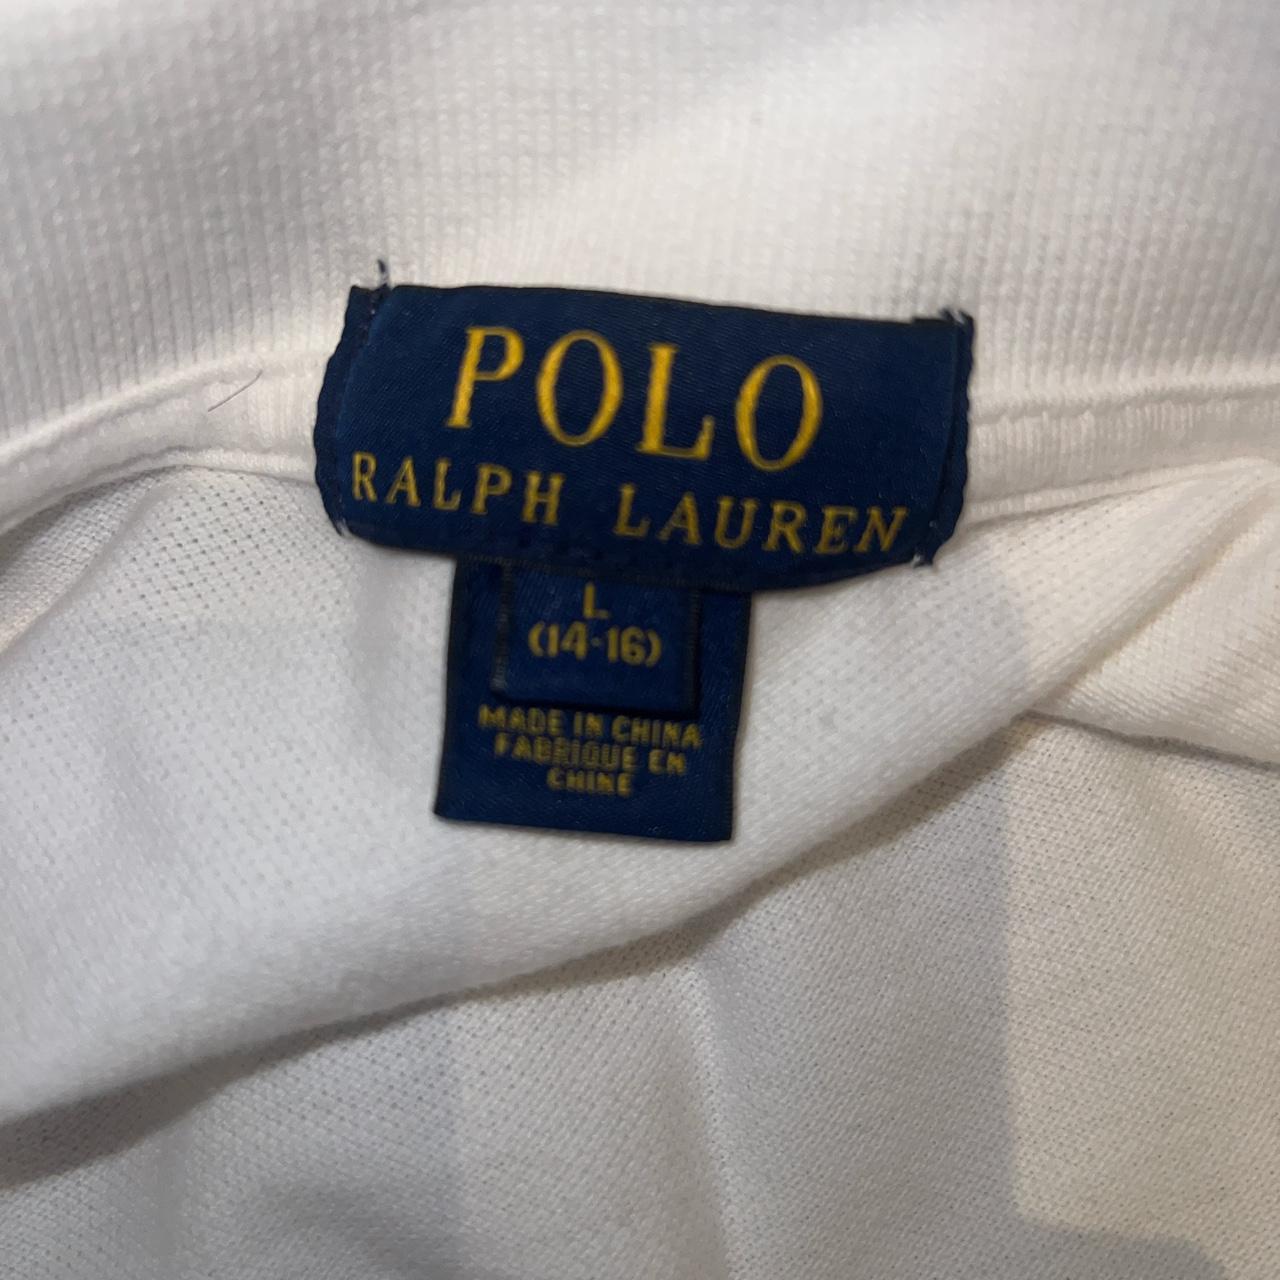 Ralph Lauren Polo shirt Size Large (14-16) 10/10... - Depop